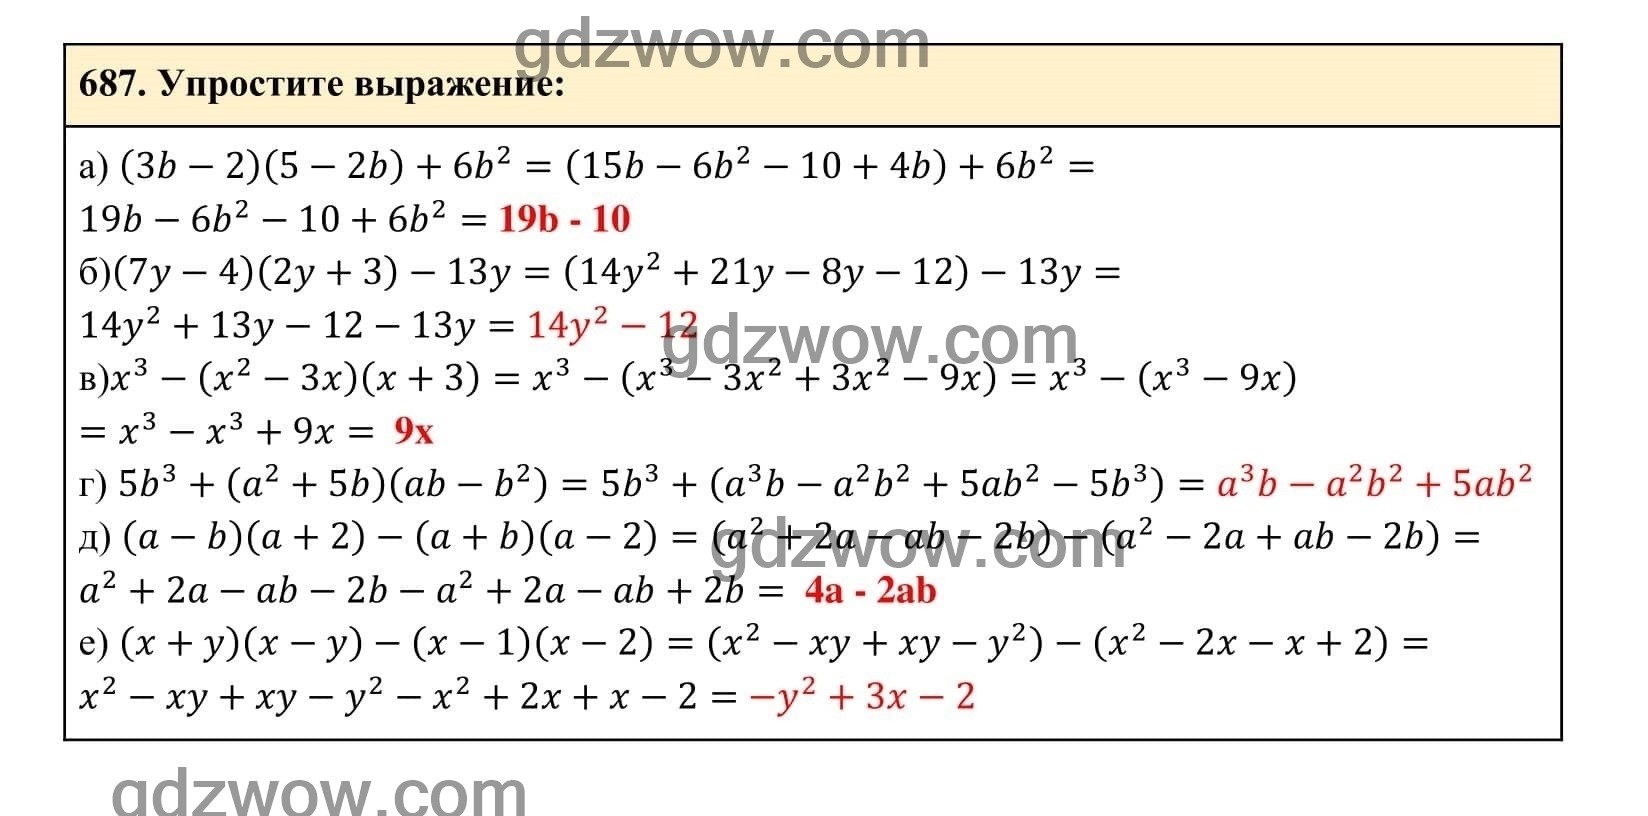 Упражнение 687 - ГДЗ по Алгебре 7 класс Учебник Макарычев (решебник) - GDZwow